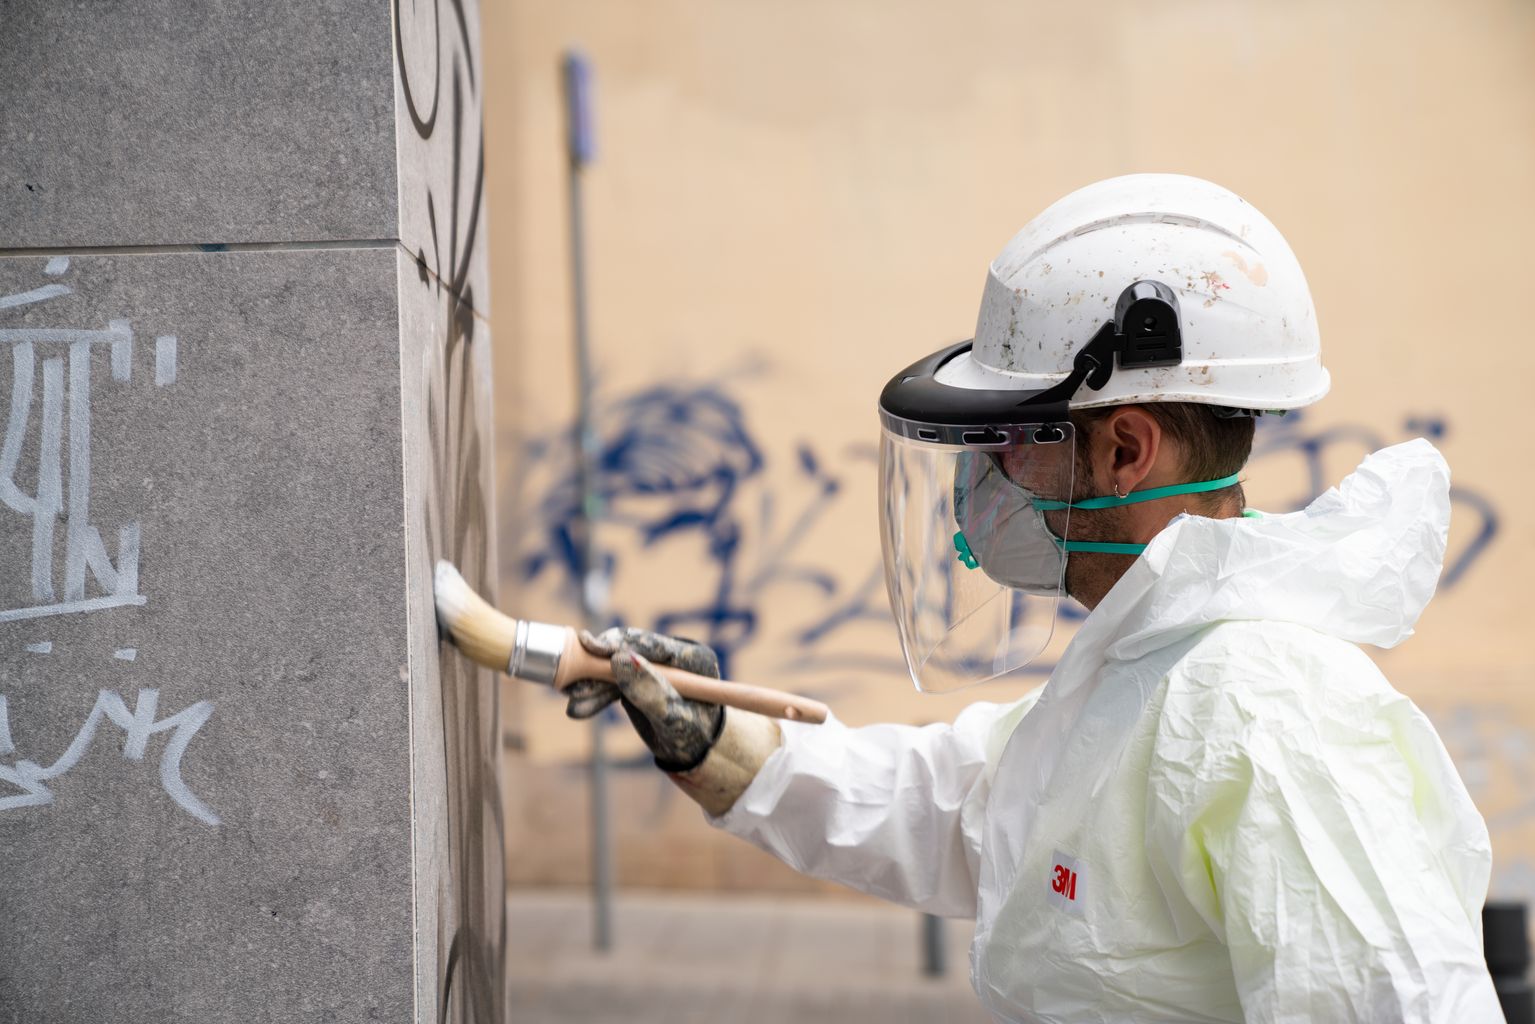 Un treballador amb la granota de protecció i una mascareta de seguretat aplica un producte sobre uns grafits pintats en una paret per retirar-los